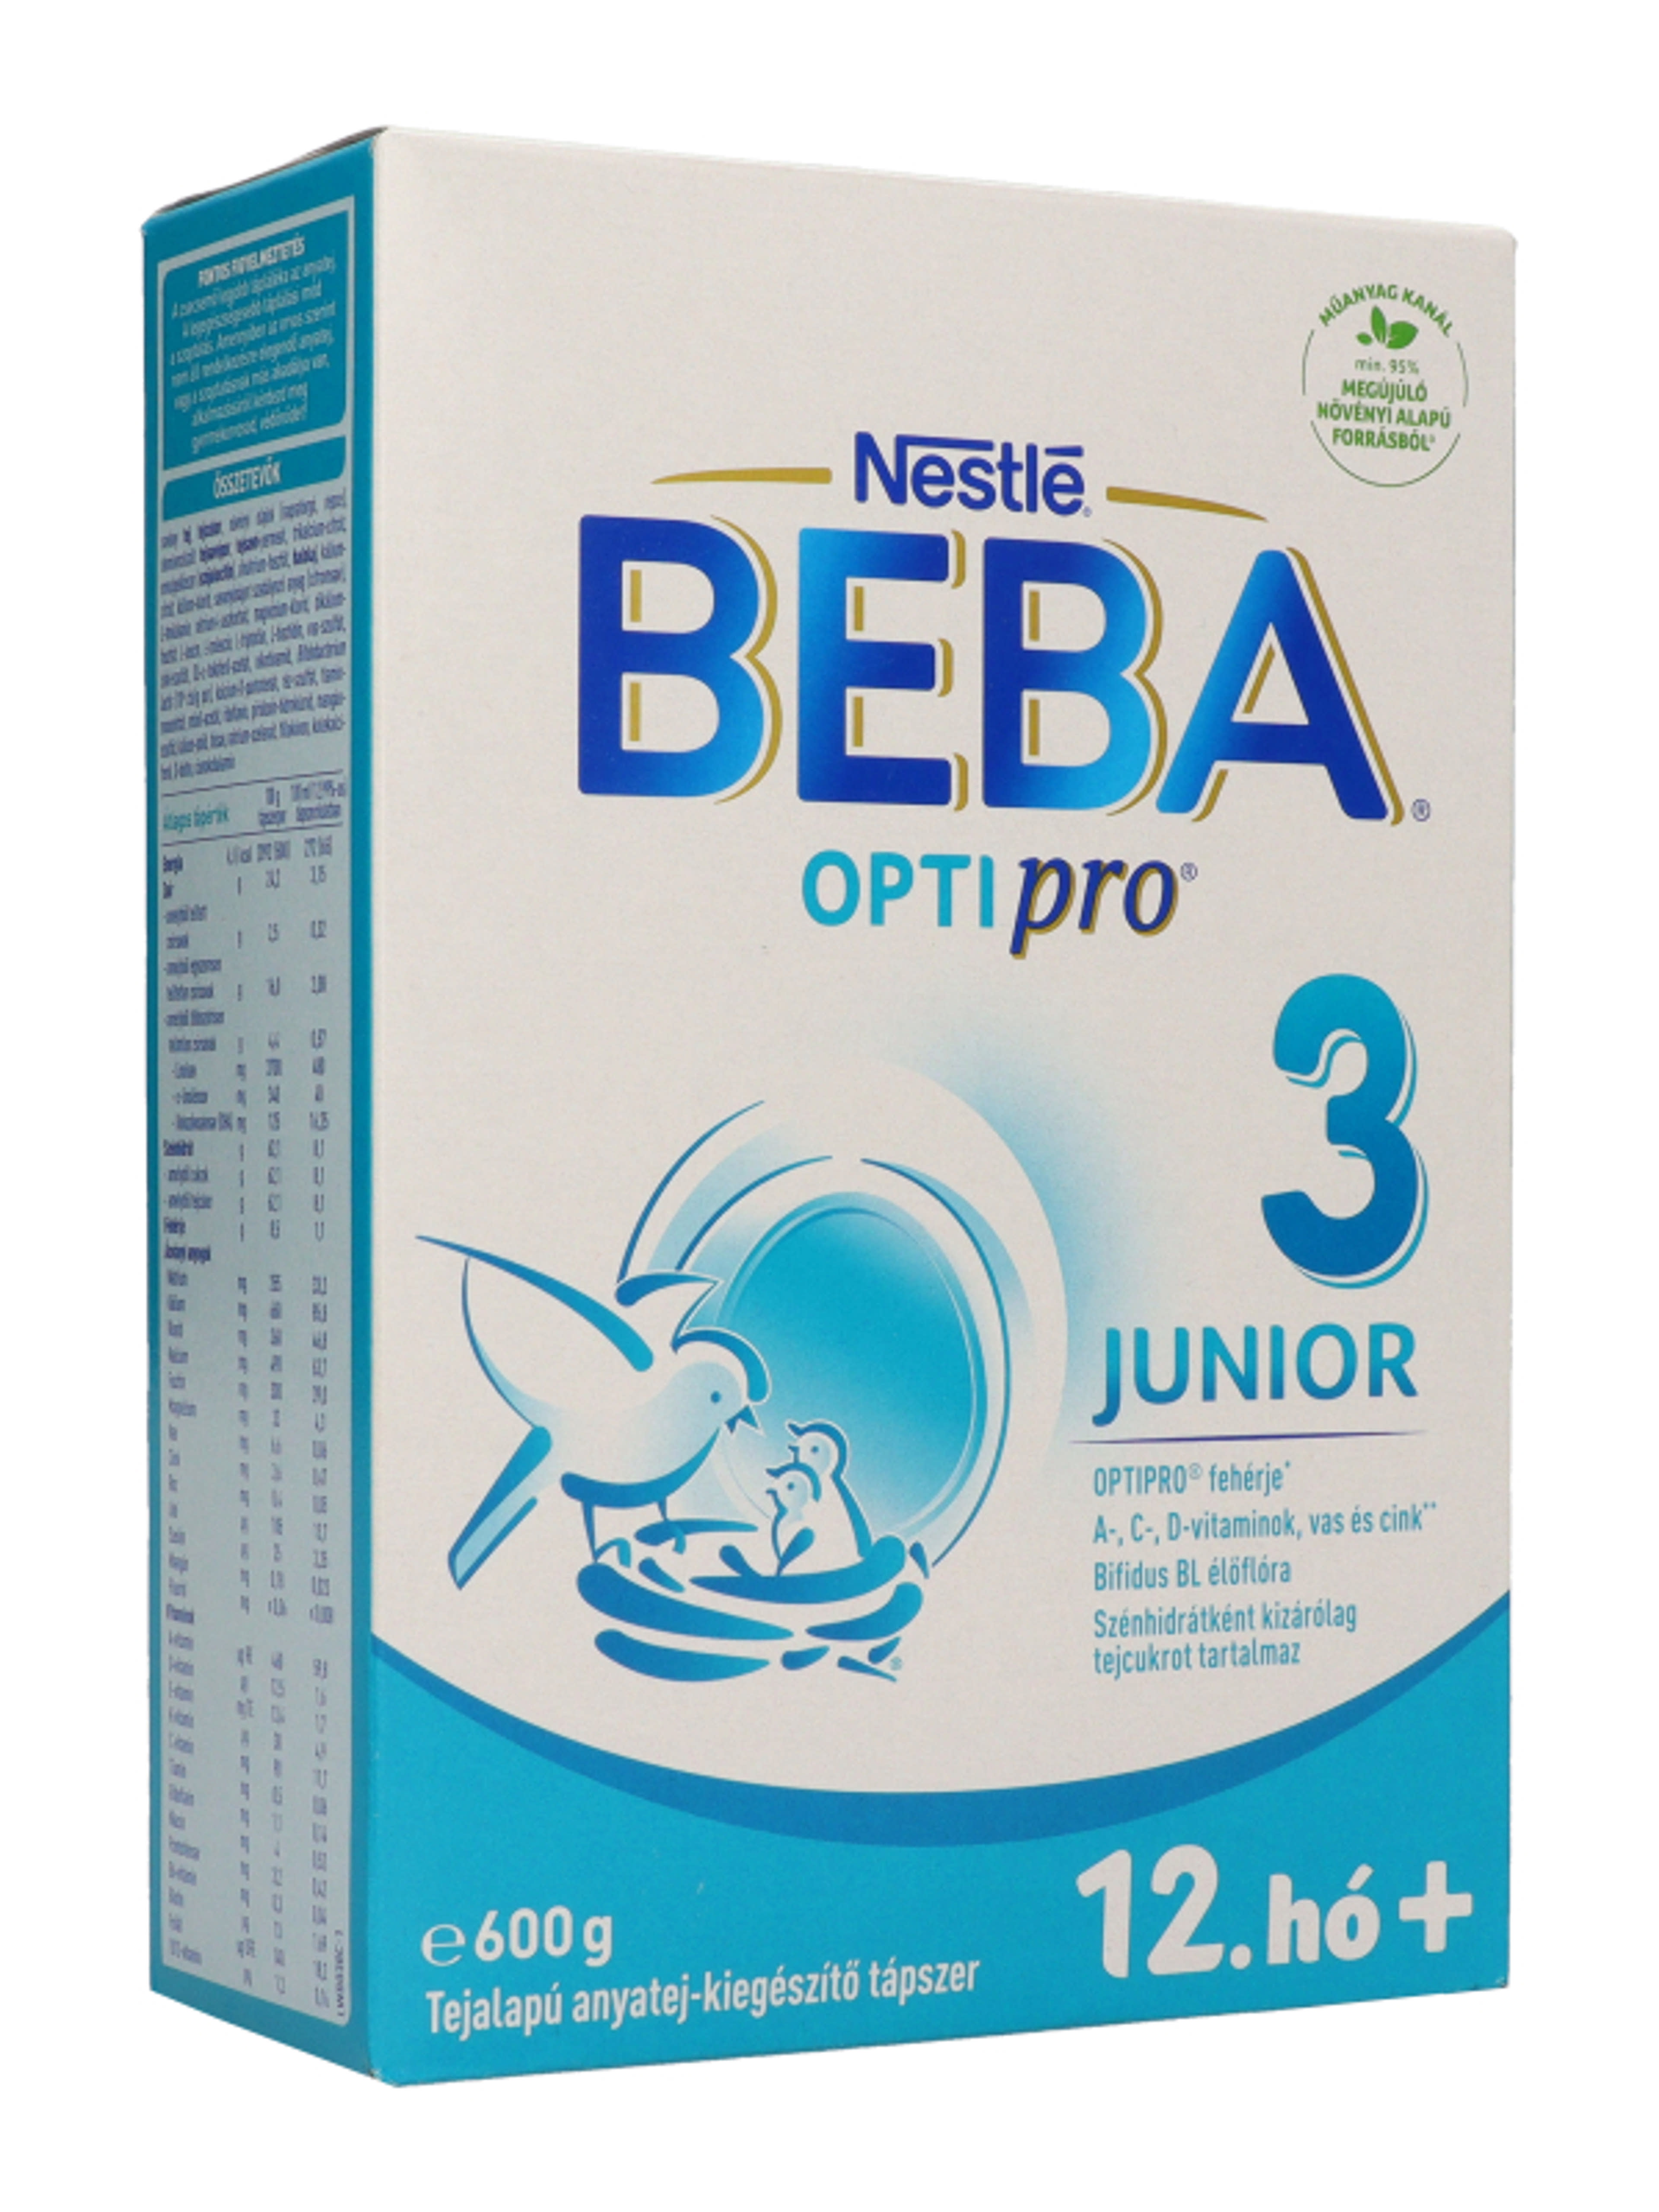 BEBA OPTIPRO Junior 3 tejalapú anyatej-kiegészítő tápszer 12. hónapos kortól - 600 g-7